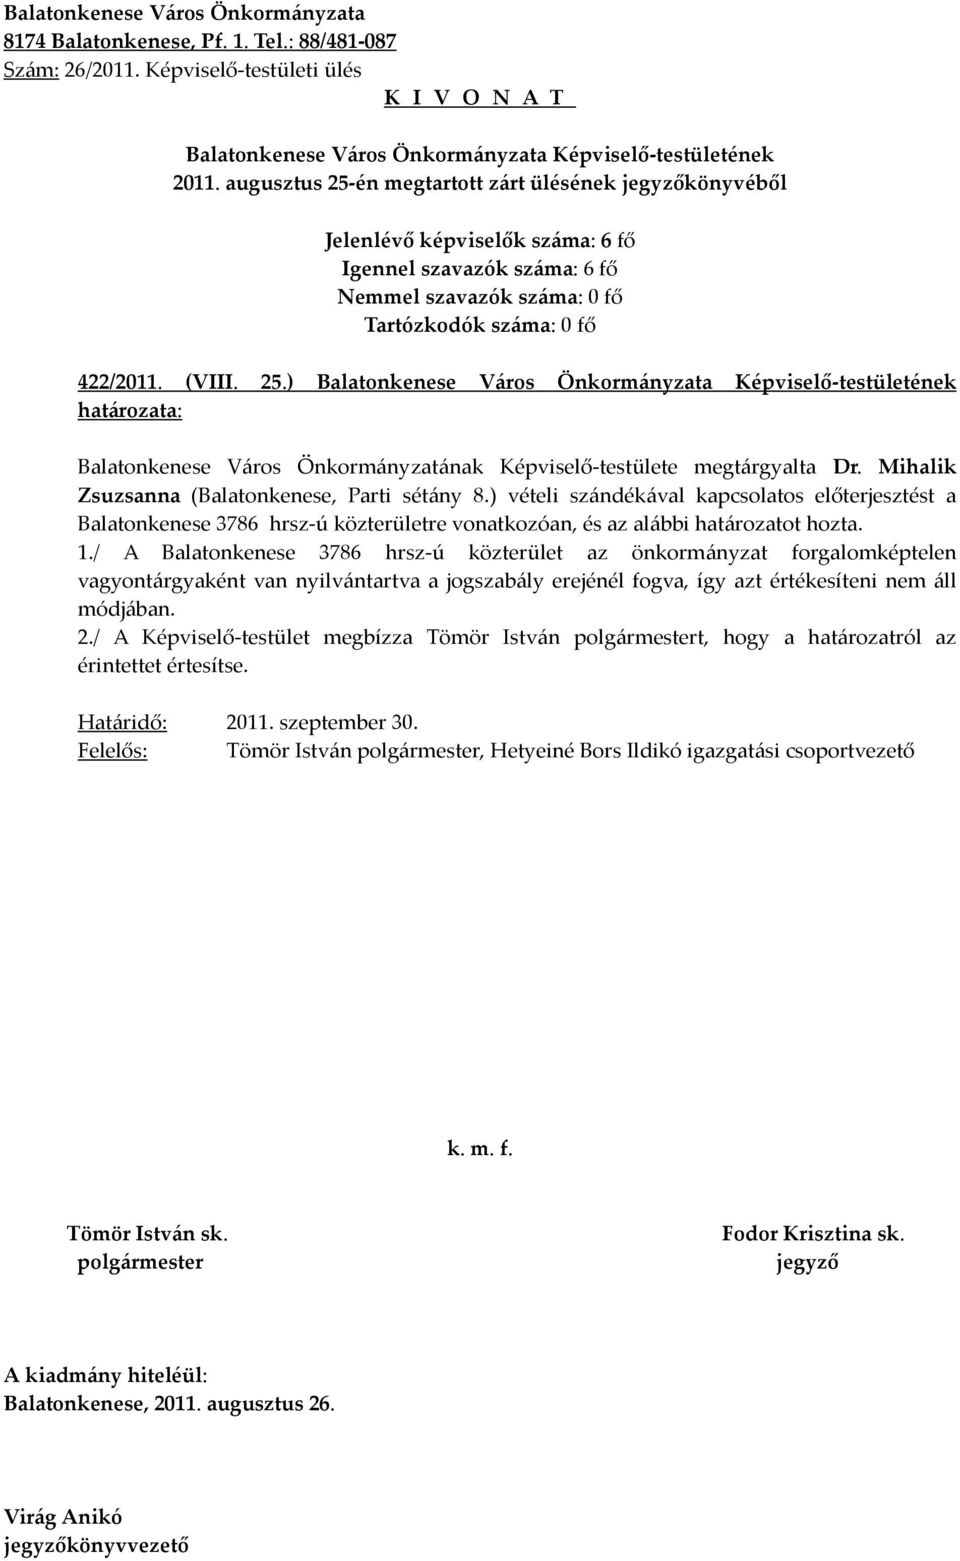 ) vételi szándékával kapcsolatos előterjesztést a Balatonkenese 3786 hrsz-ú közterületre vonatkozóan, és az alábbi határozatot hozta. 1.